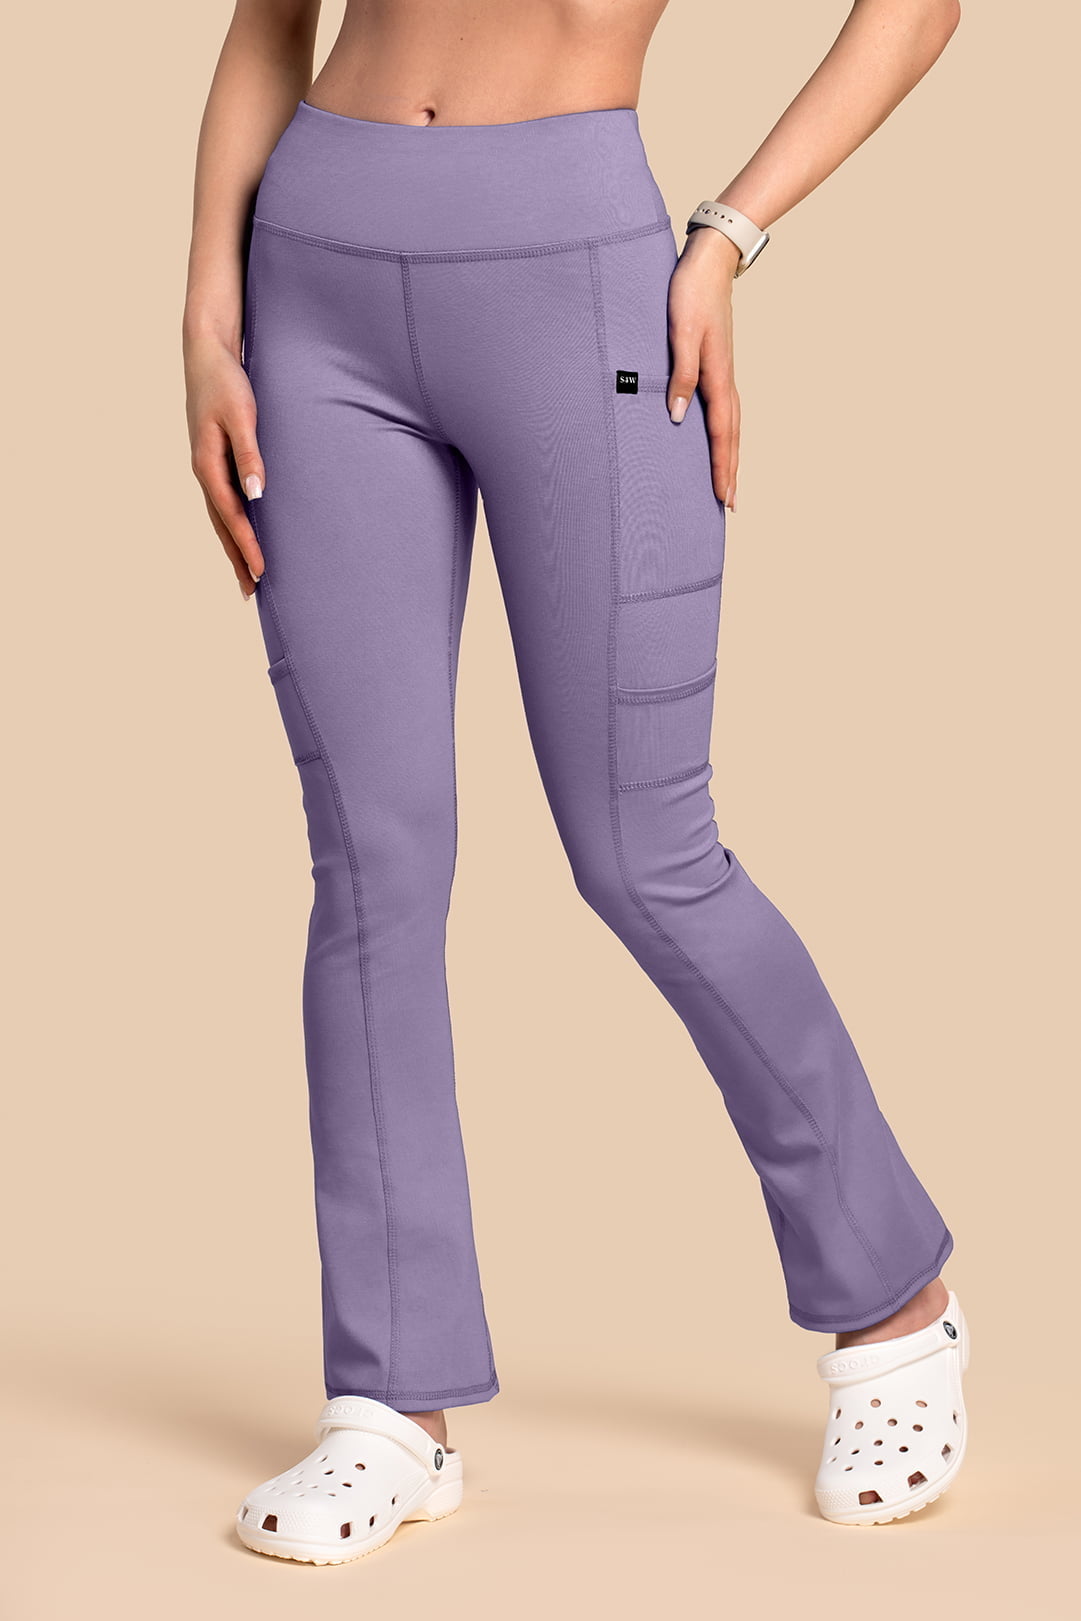 Spodnie medyczne damskie – Scrubs Yoga Pants liliowe